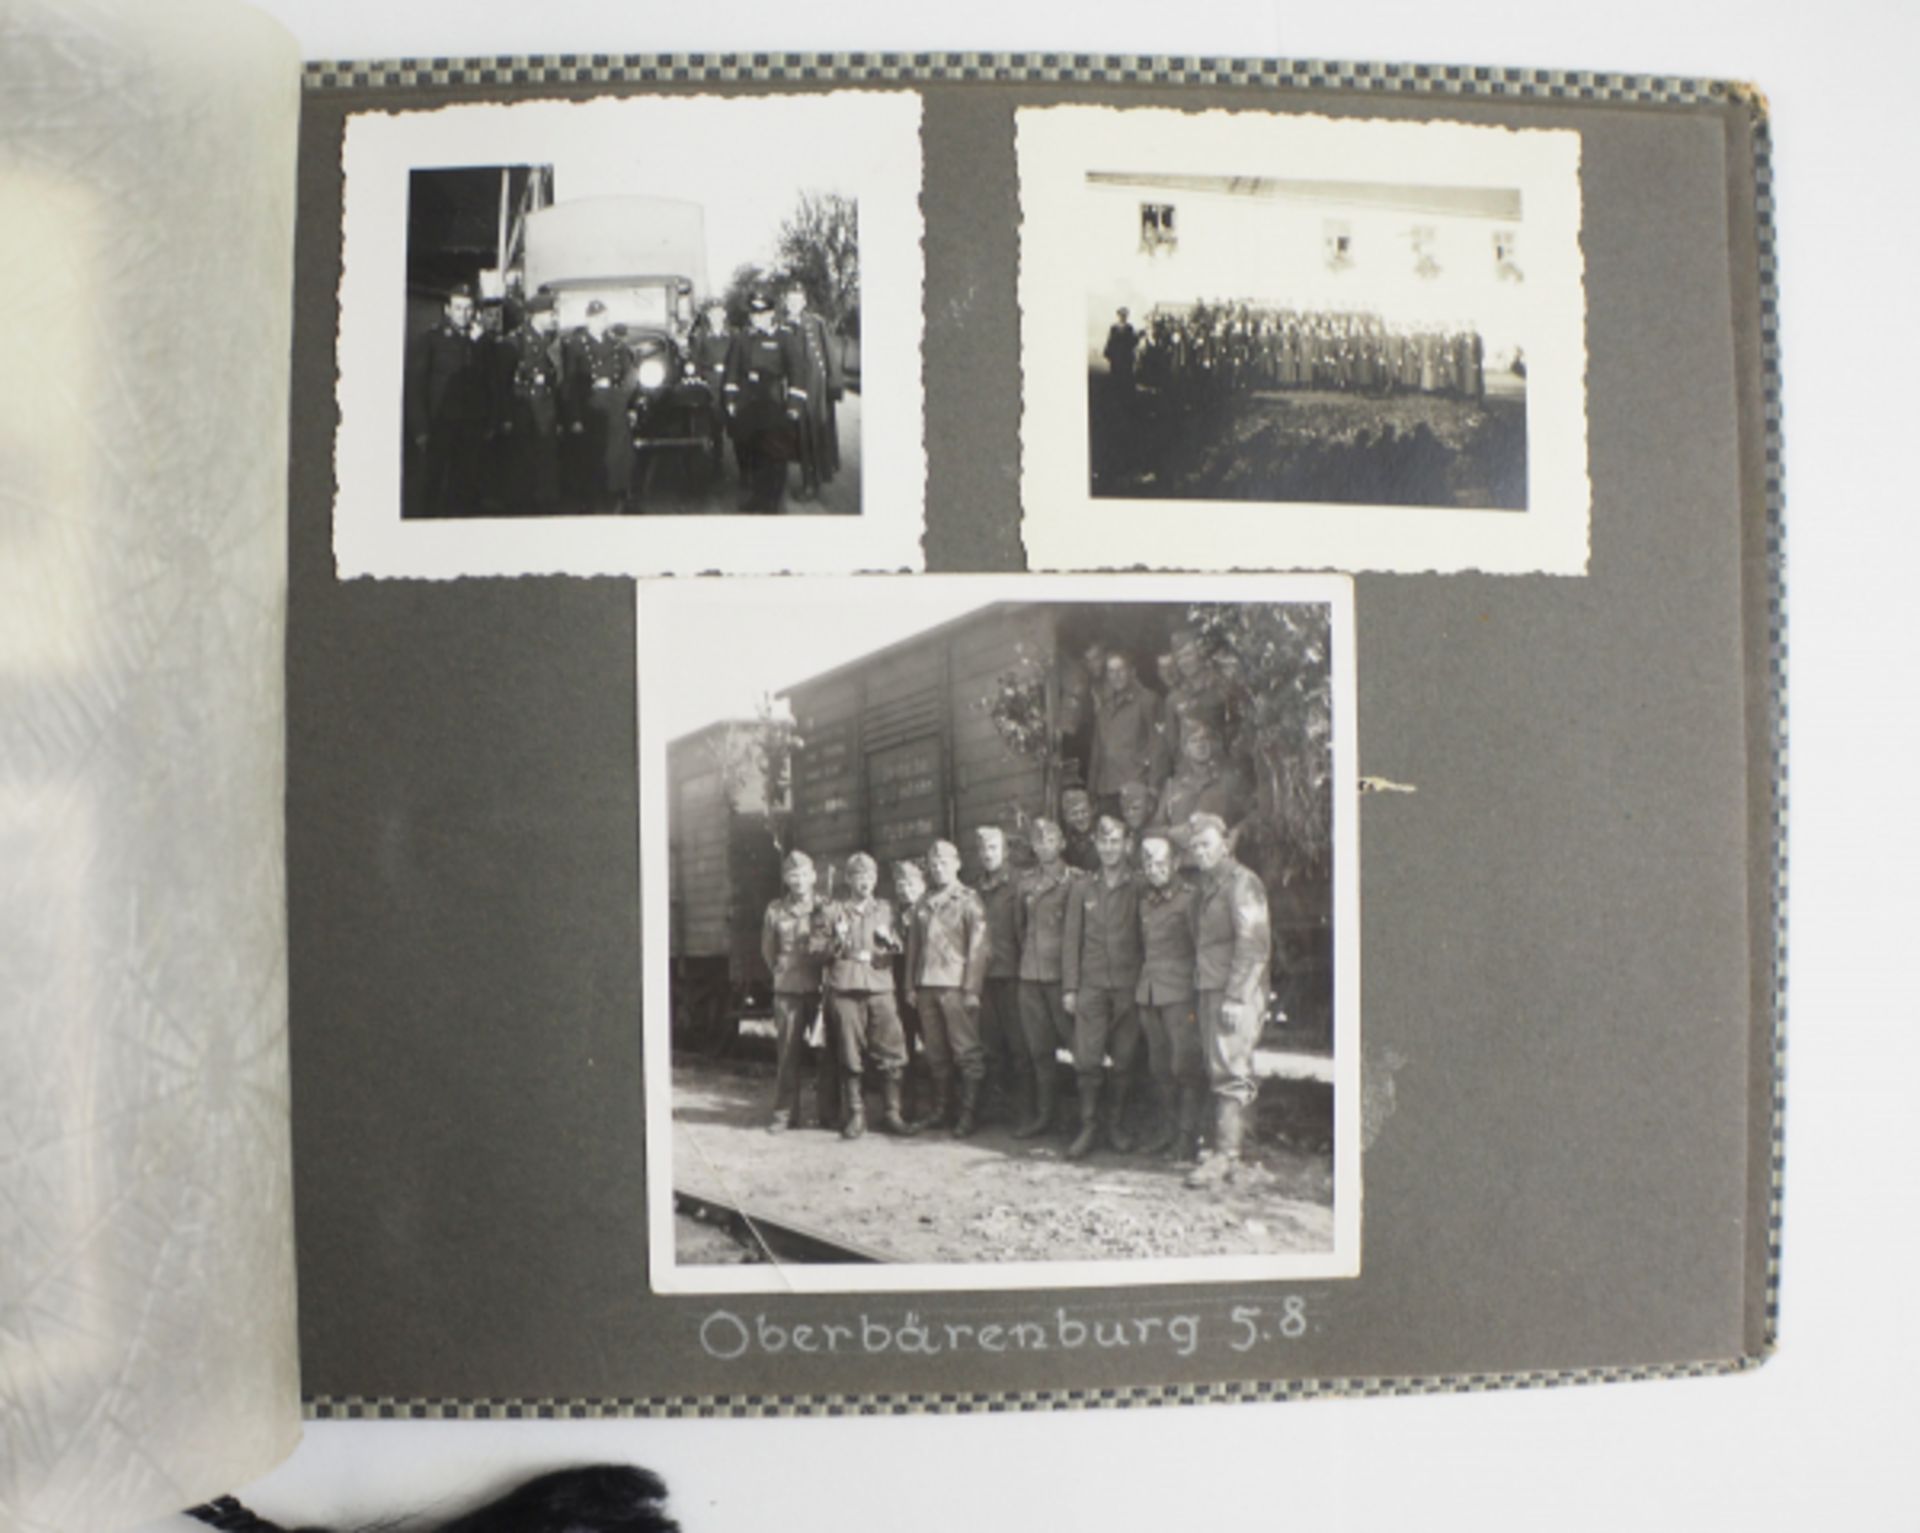 Fotoalbum der 4. Batterie, Flak-Regiment 5 - München 1937.Karierter Einband, 85 Fotos, diverse - Image 3 of 4